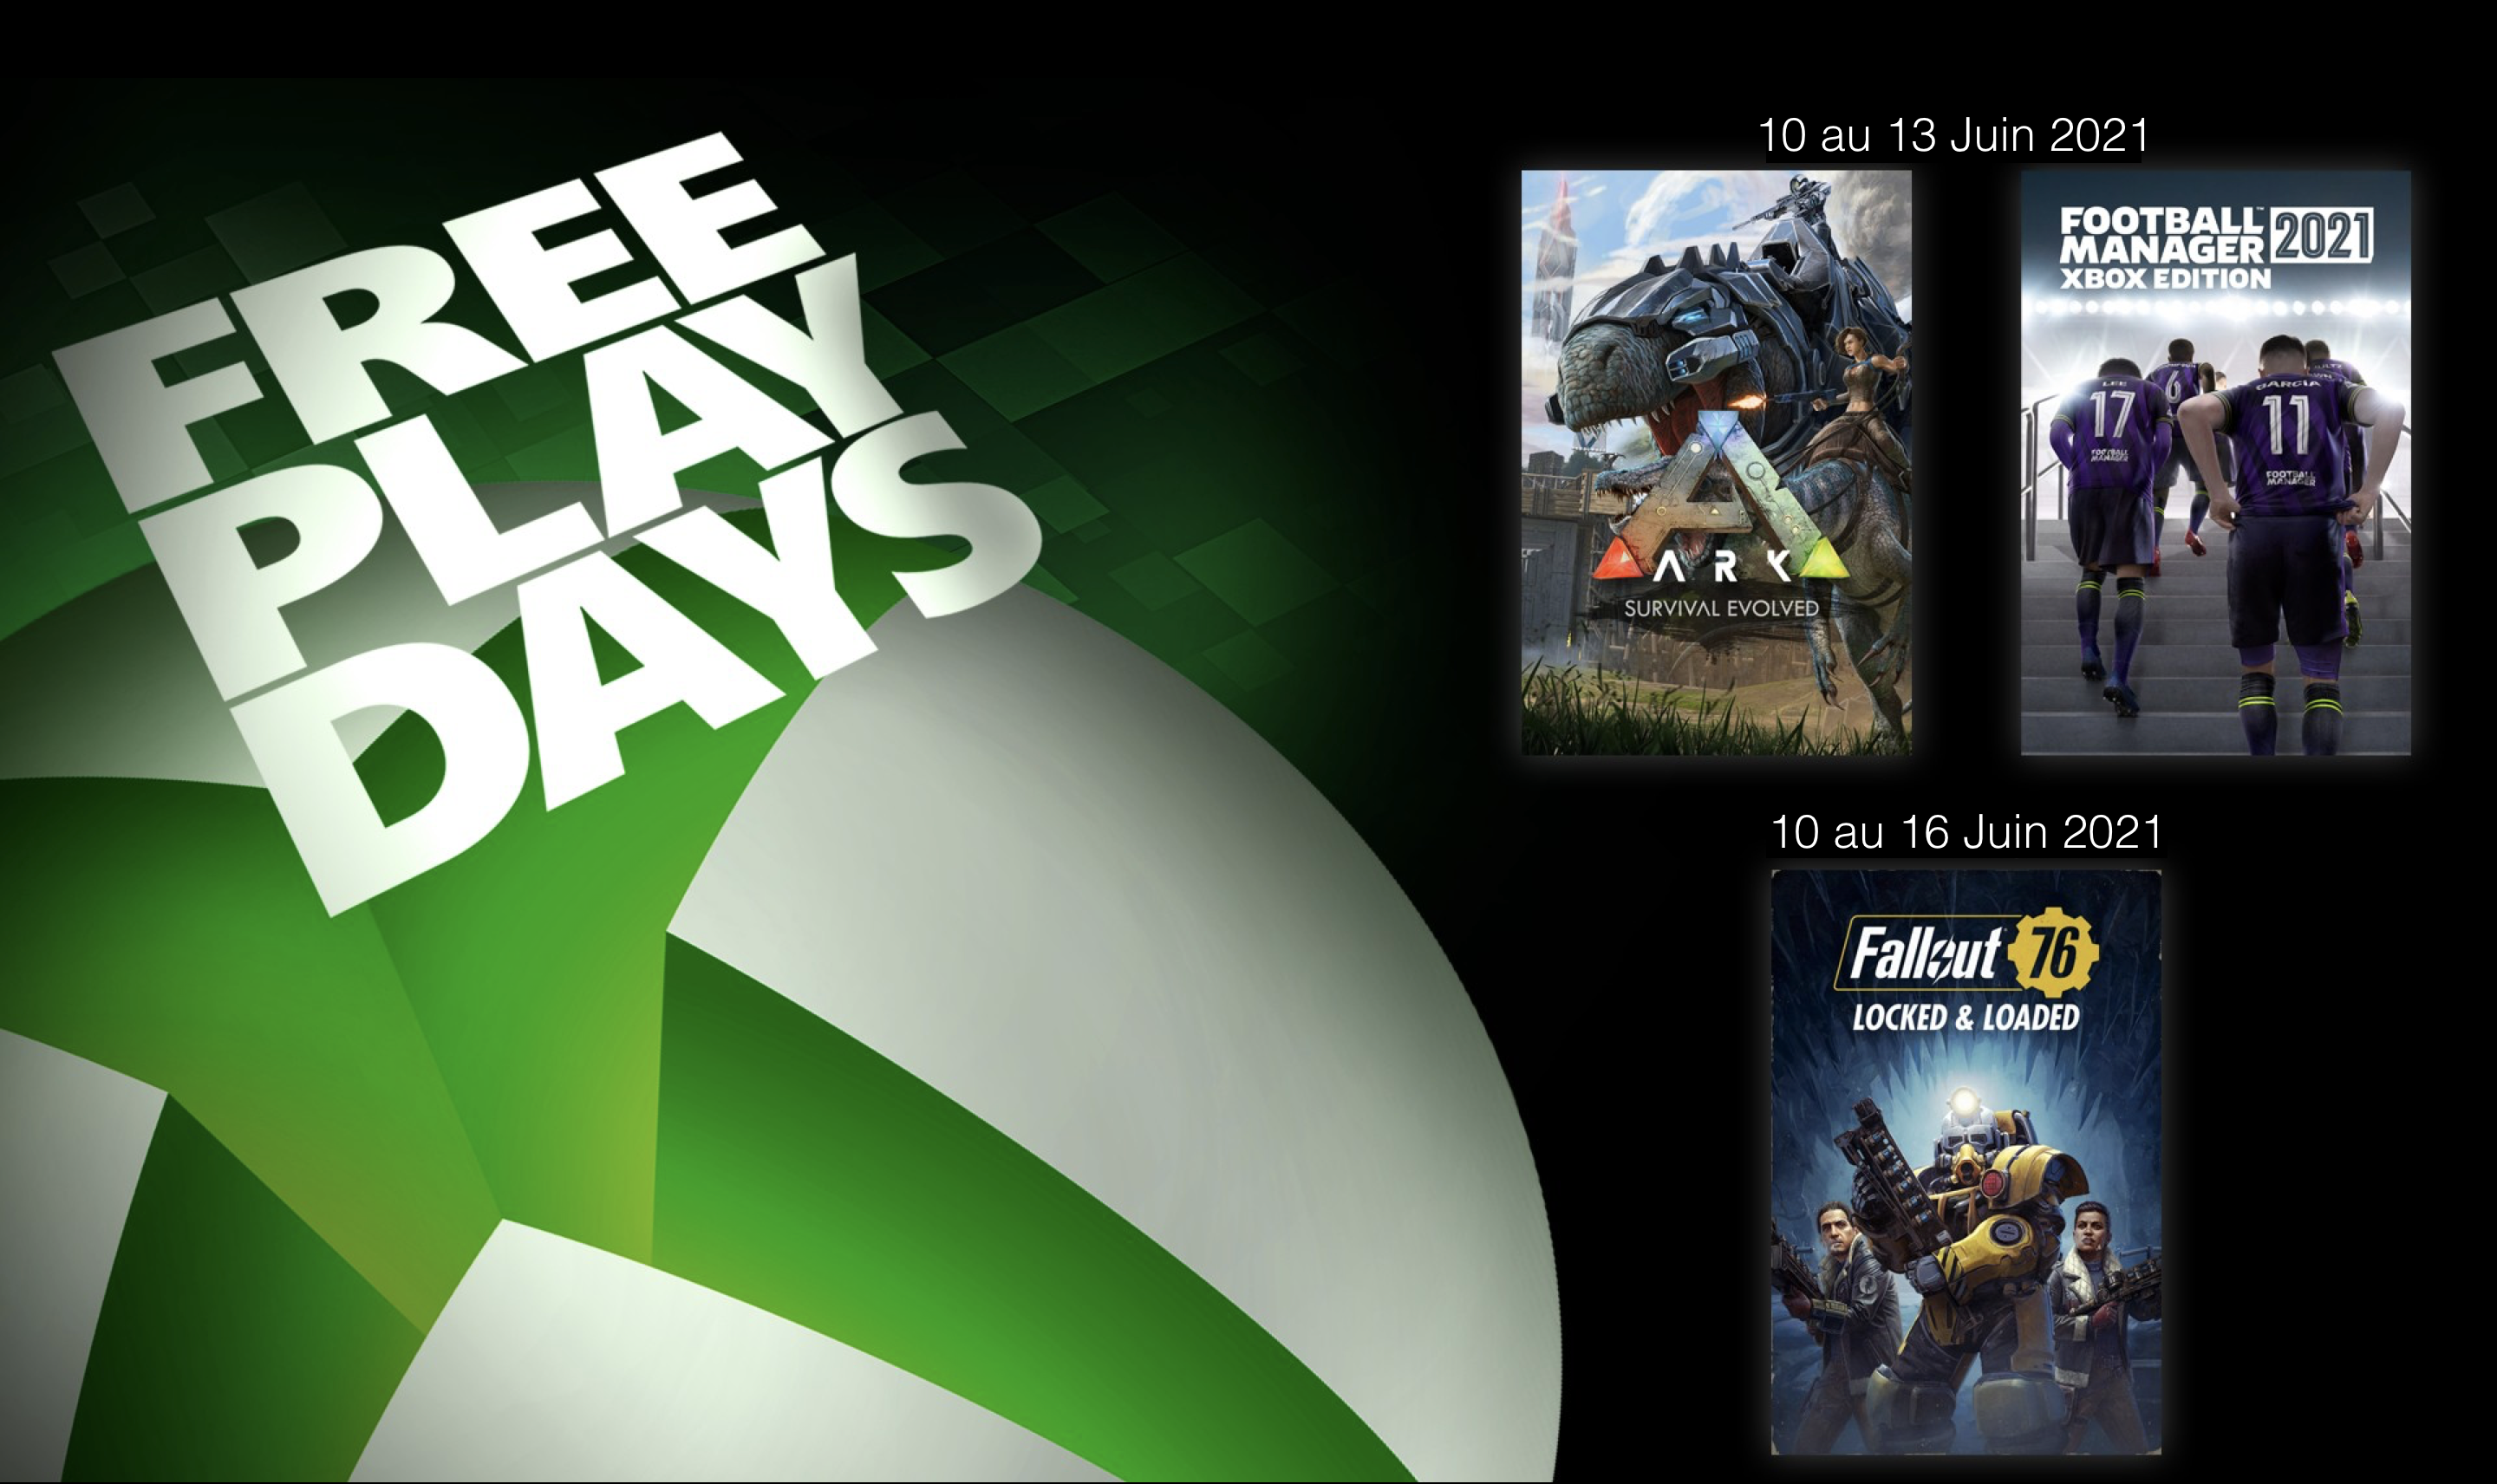 Jours de jeu gratuit : Fallout 76, Ark: Survival Evolved & Football Manager 2021 Xbox Edition